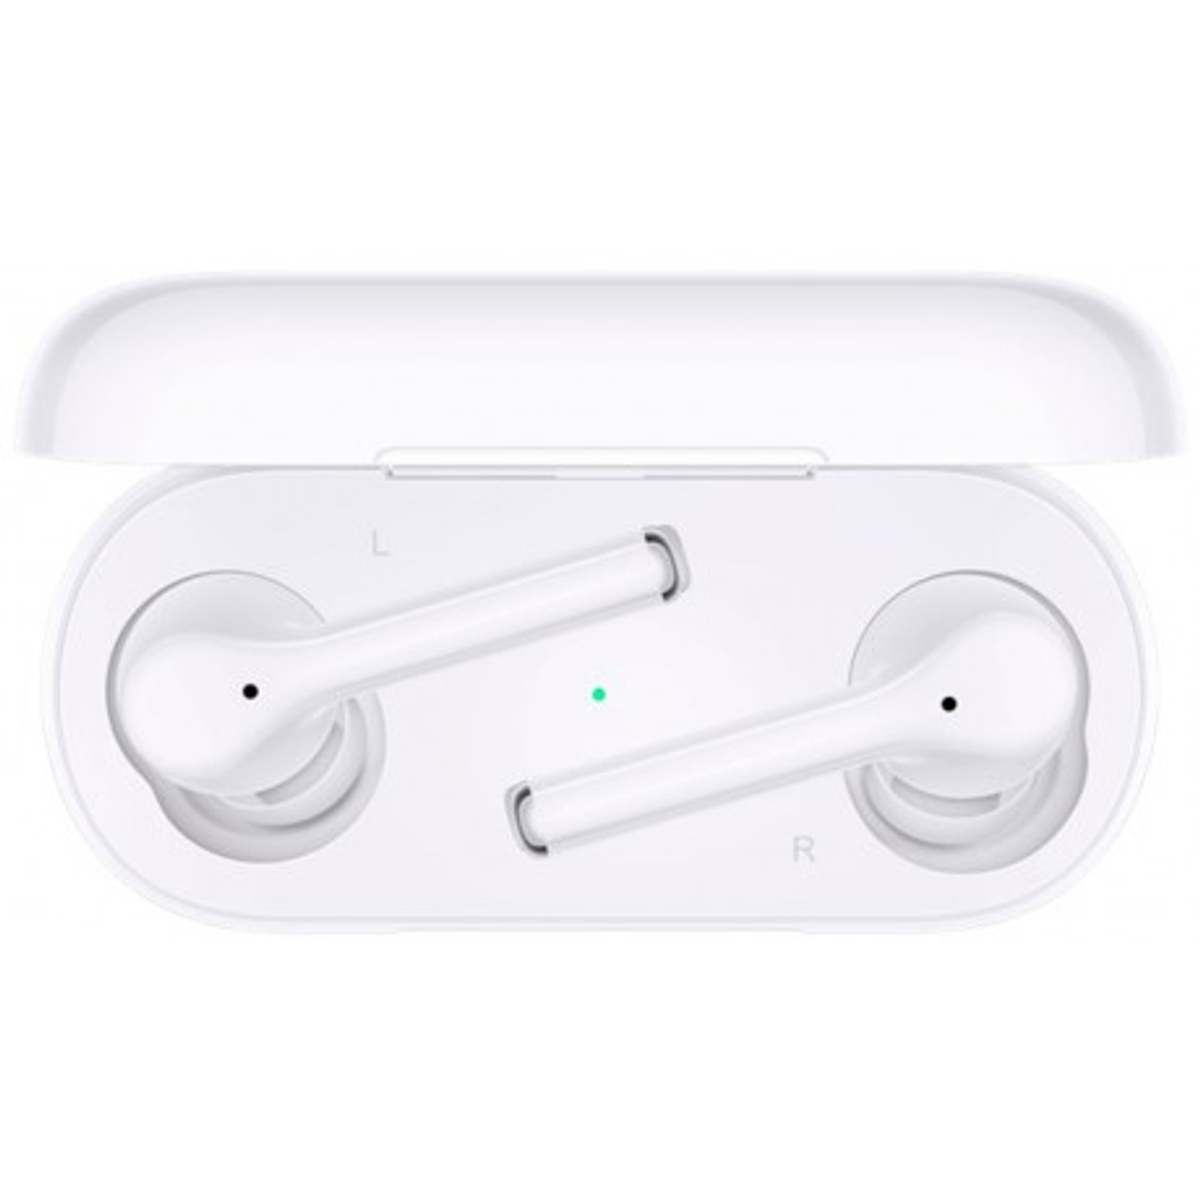 HUAWEI Freebuds Kopfhörer Bluetooth weiß 3i, In-ear